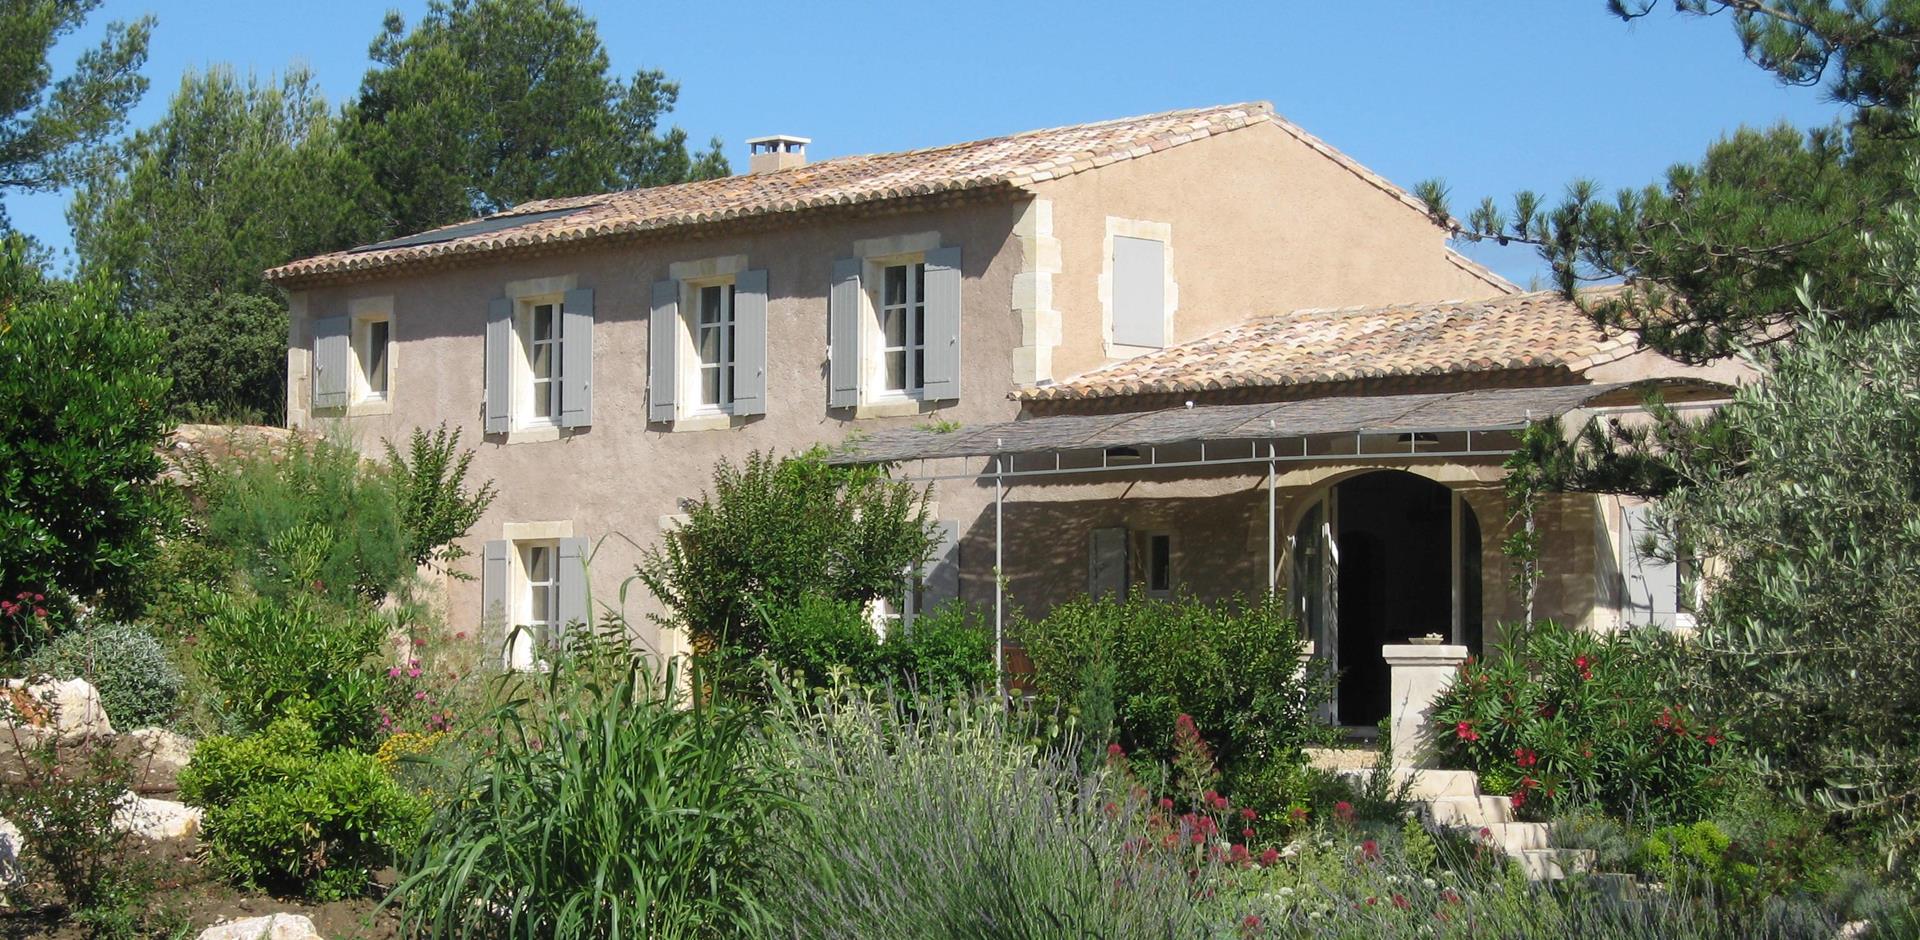 Exterior view, La Romarine, Provence